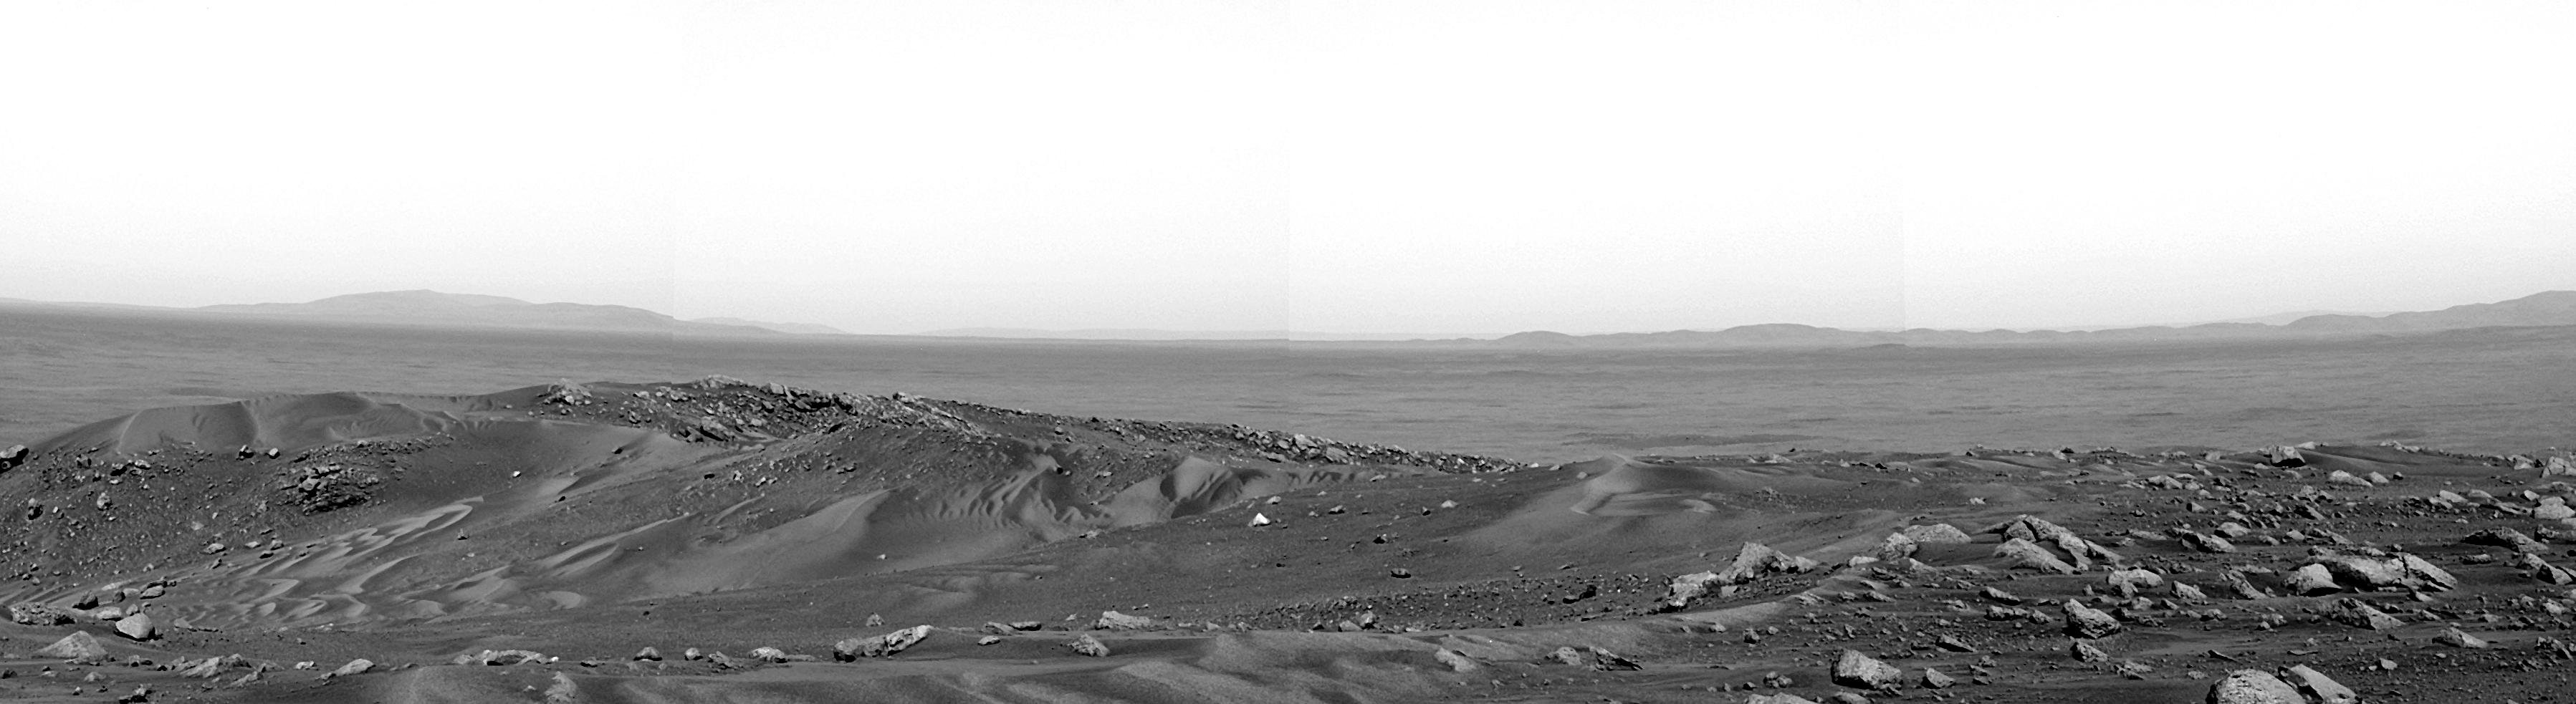 La vue de la Colline Husband sur Mars